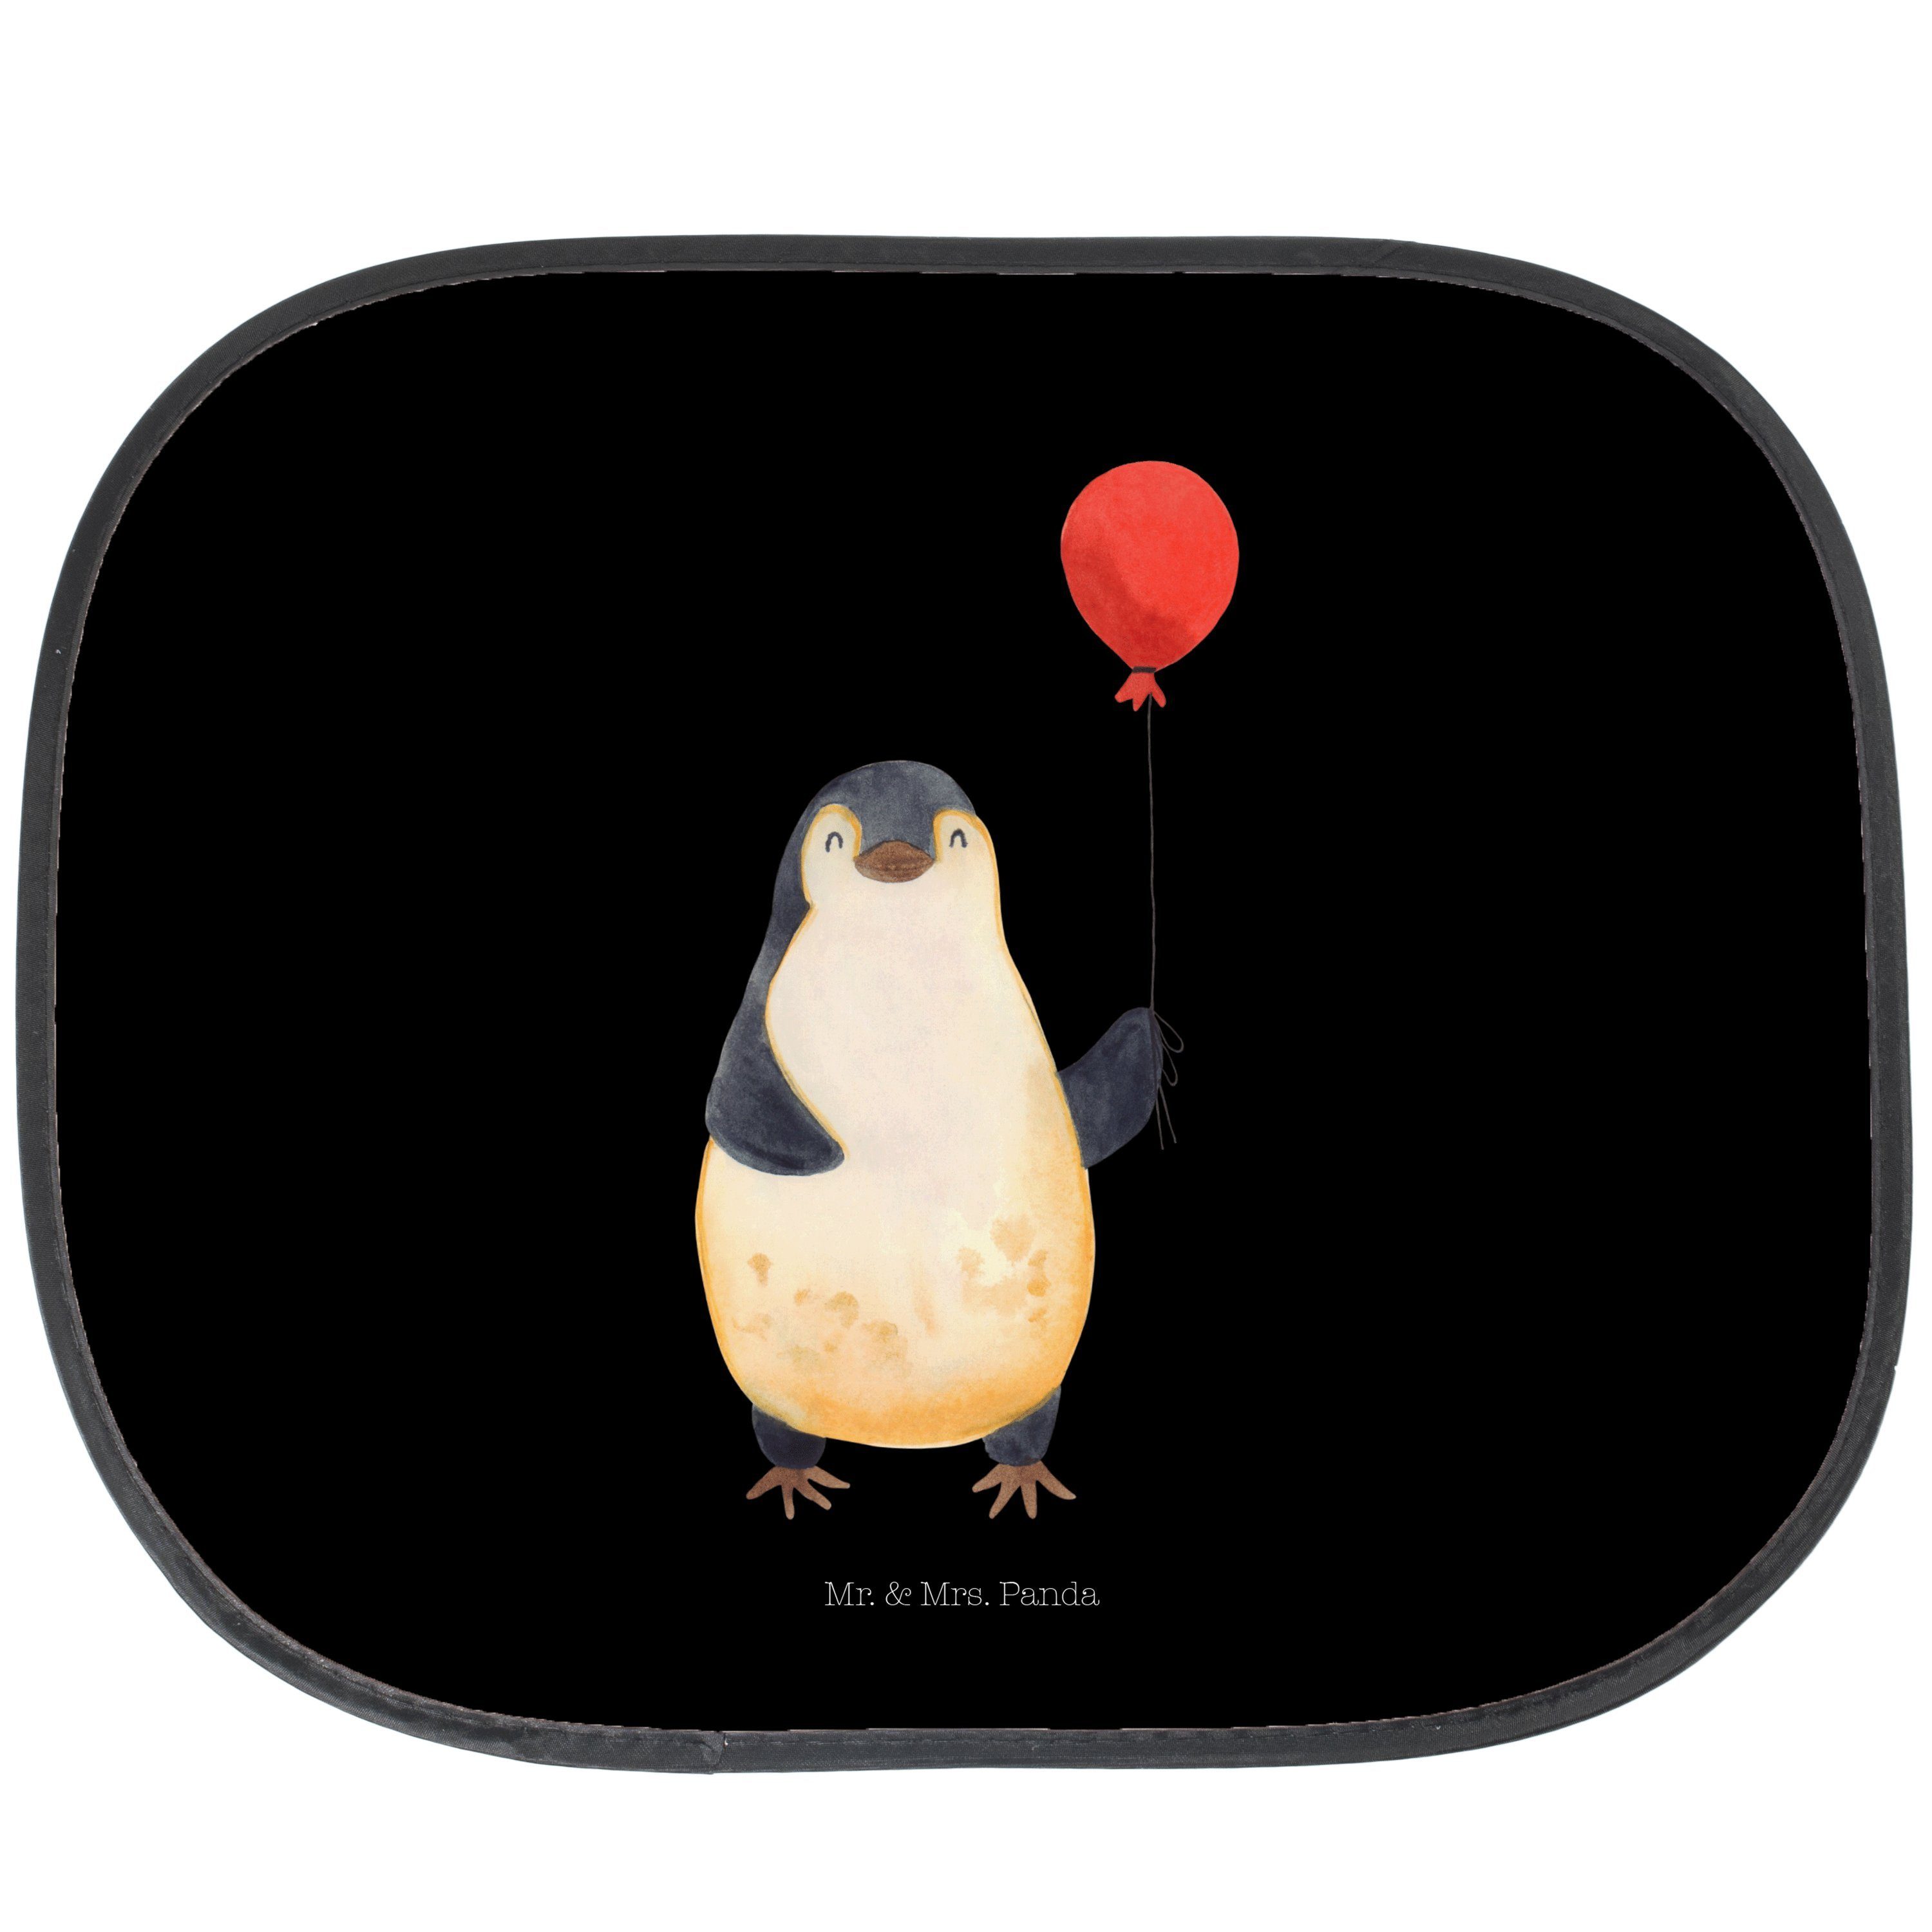 Sonnenschutz Pinguin Luftballon - Schwarz - Geschenk, Jahrmarkt, Sonne Auto, Glück, Mr. & Mrs. Panda, Seidenmatt